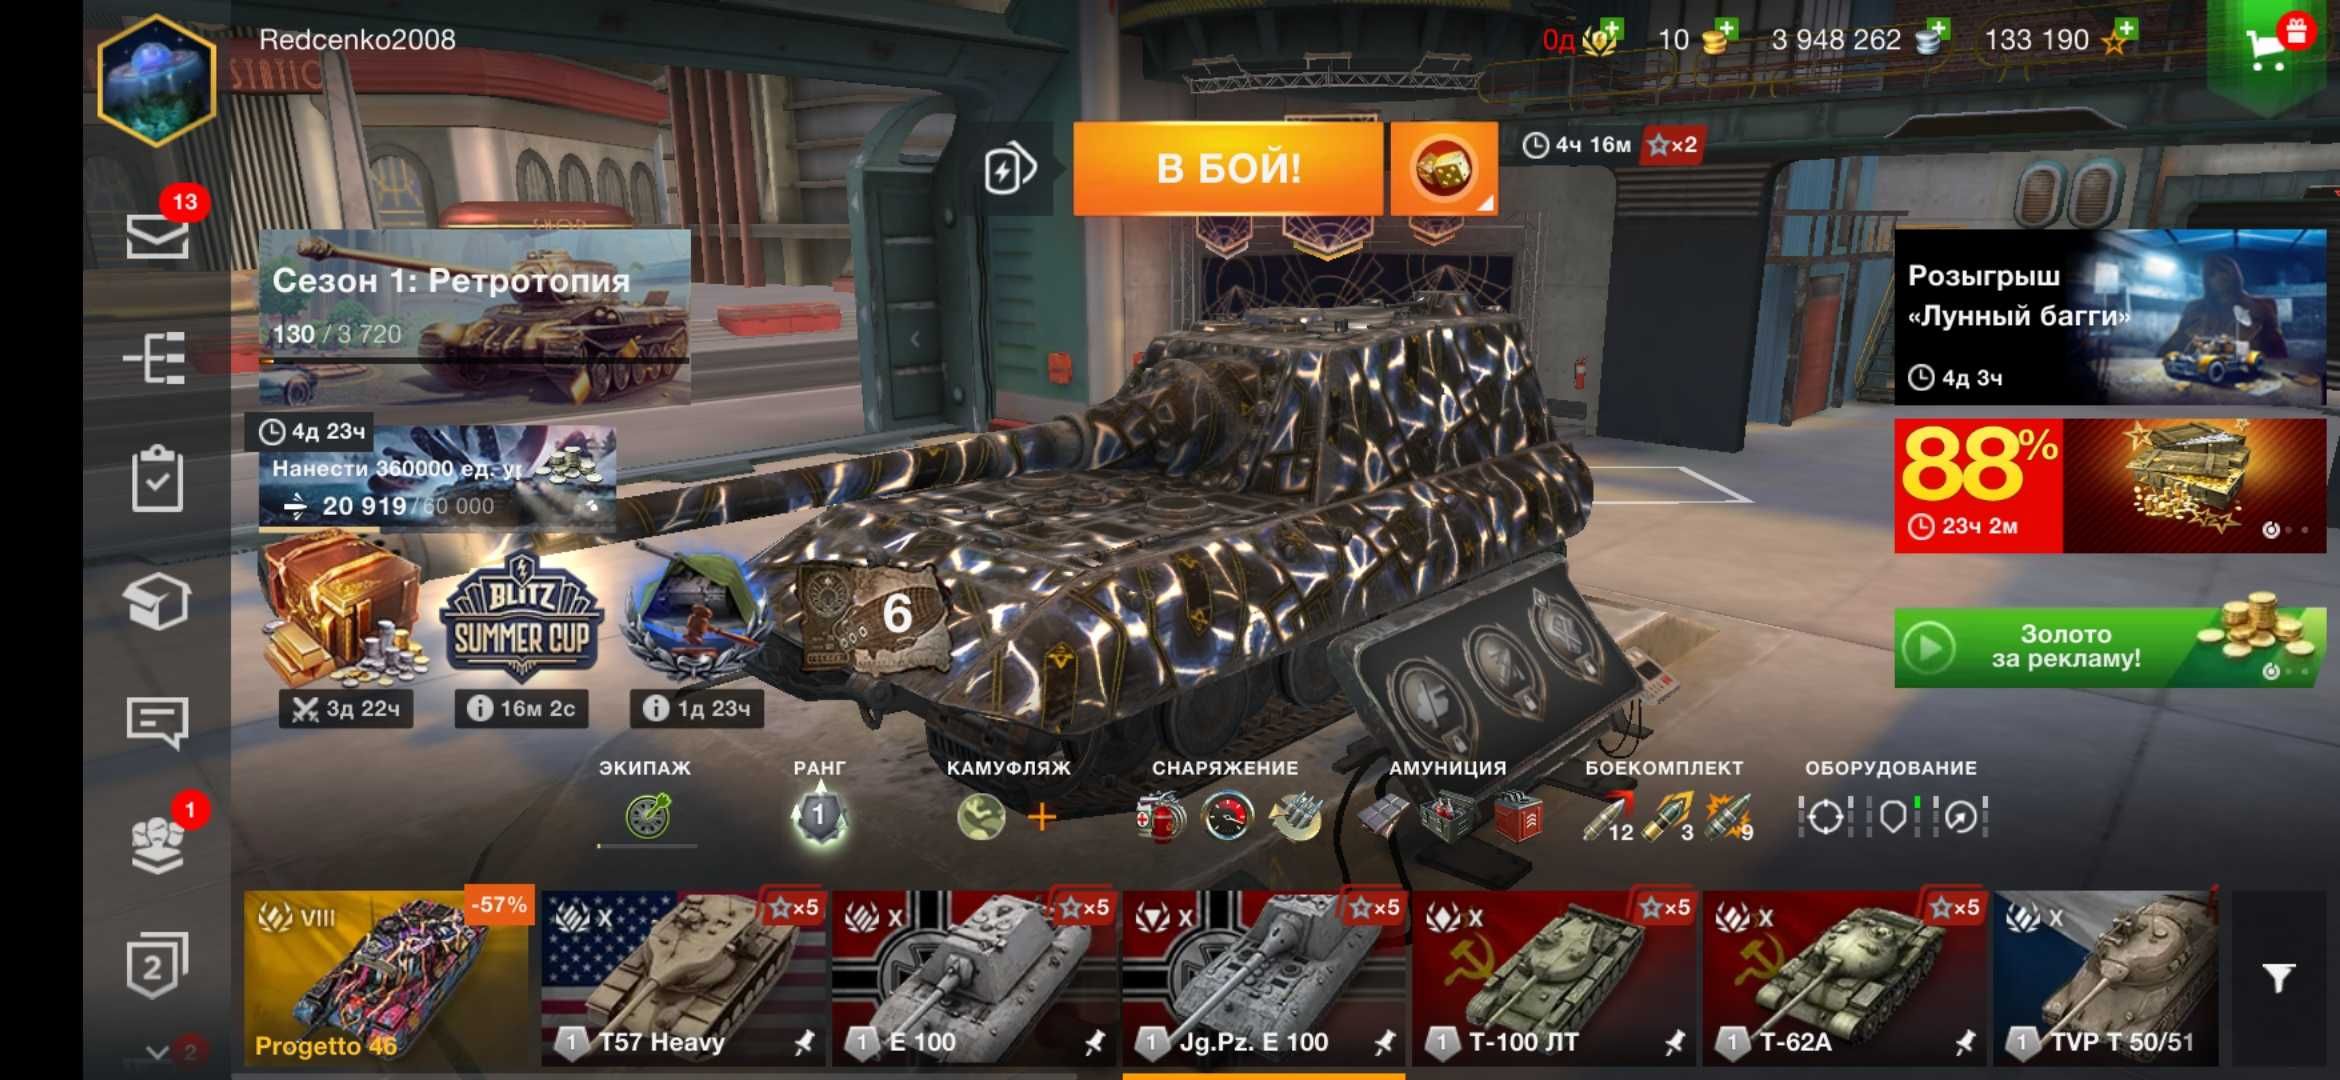 Аккаунт Tanks Blitz (Евро сервер)